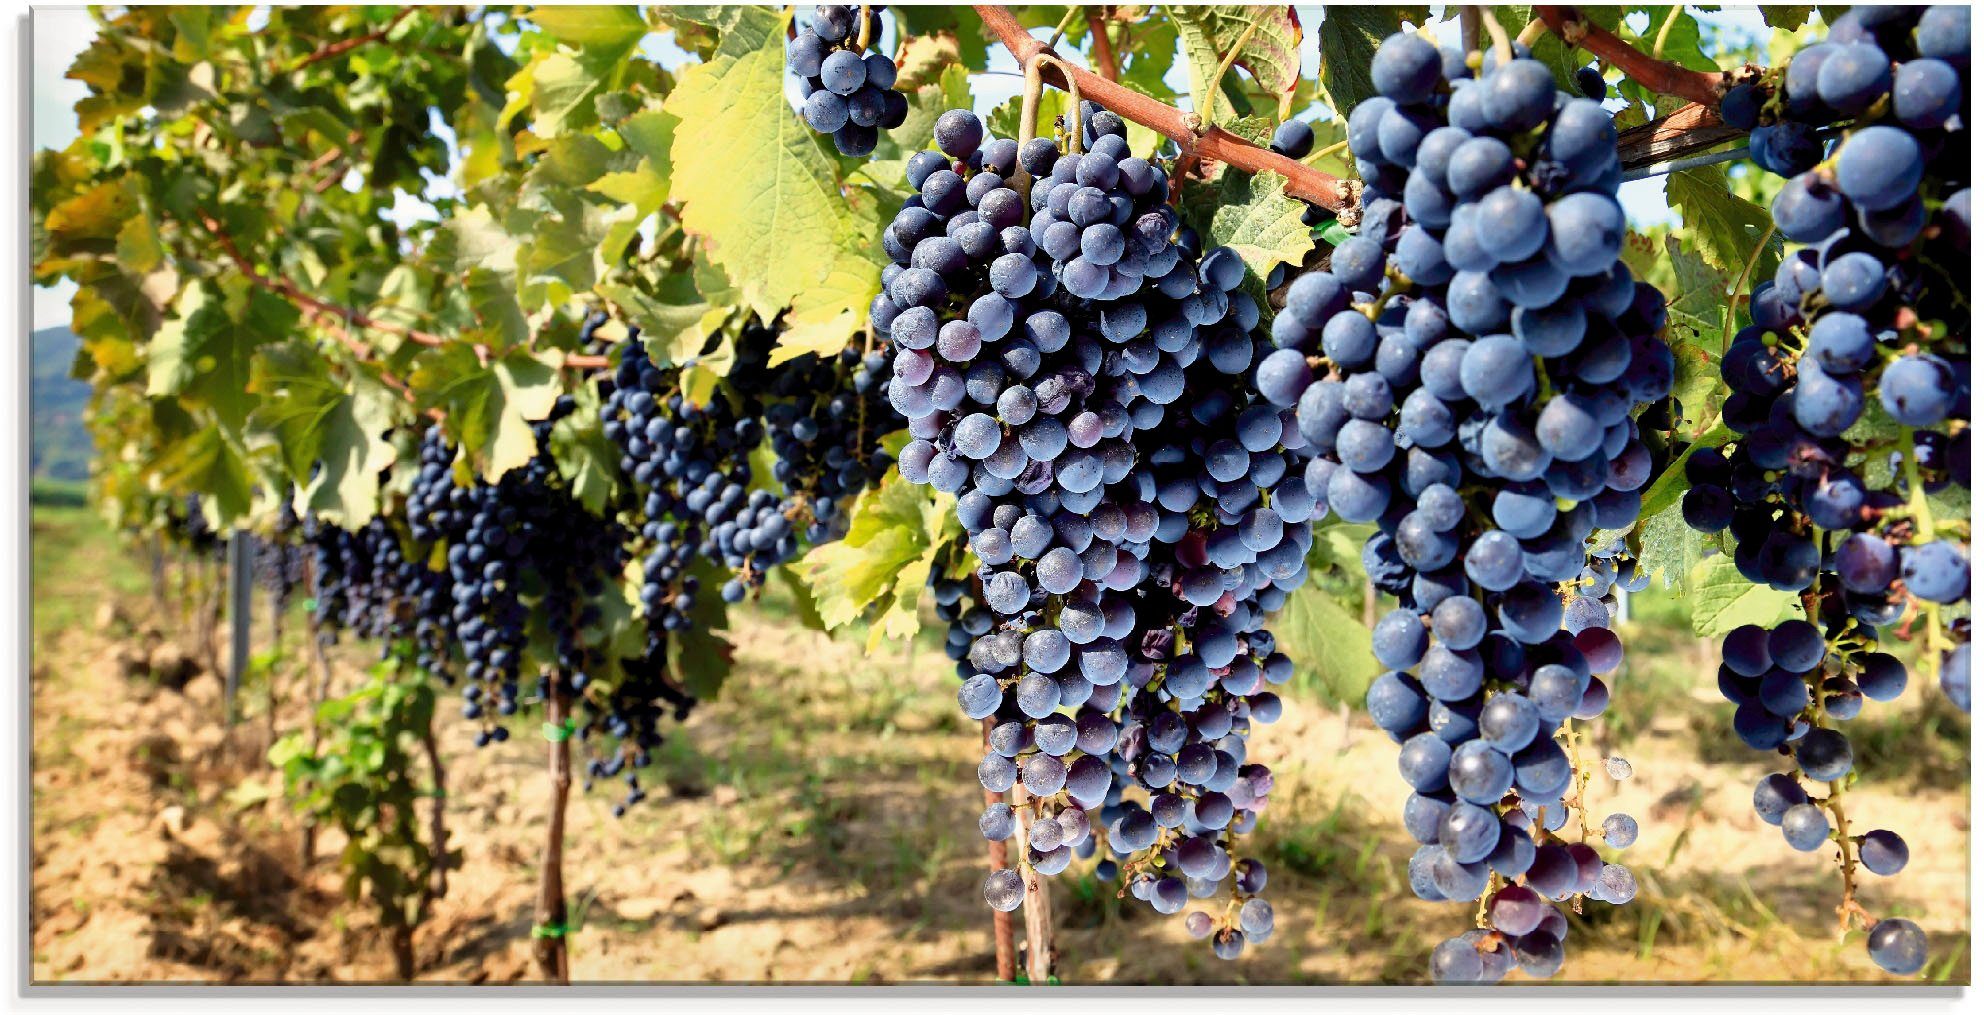 Artland Glasbild Toskanische Weintrauben, Süßspeisen (1 St), in verschiedenen Größen